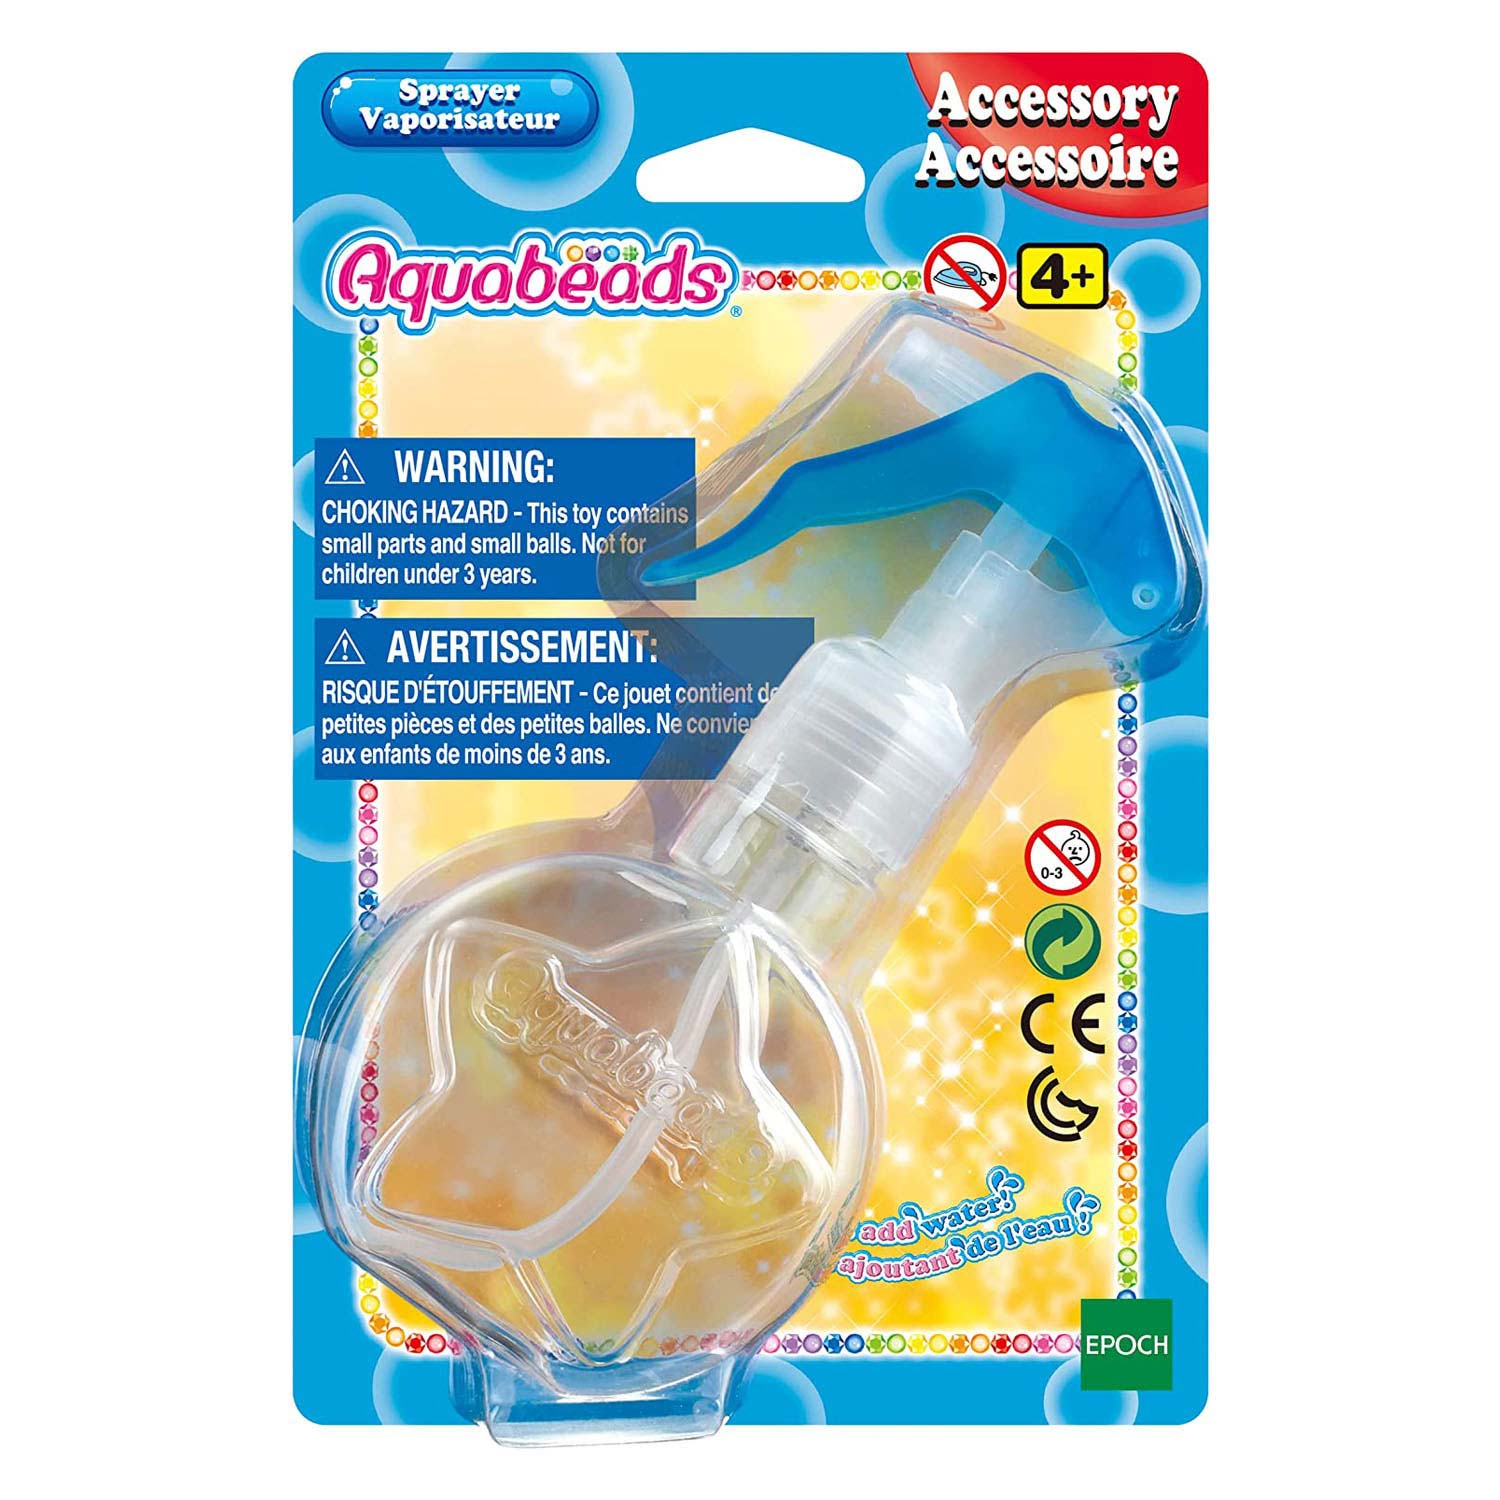 Aquabeads 31513 Sprayer